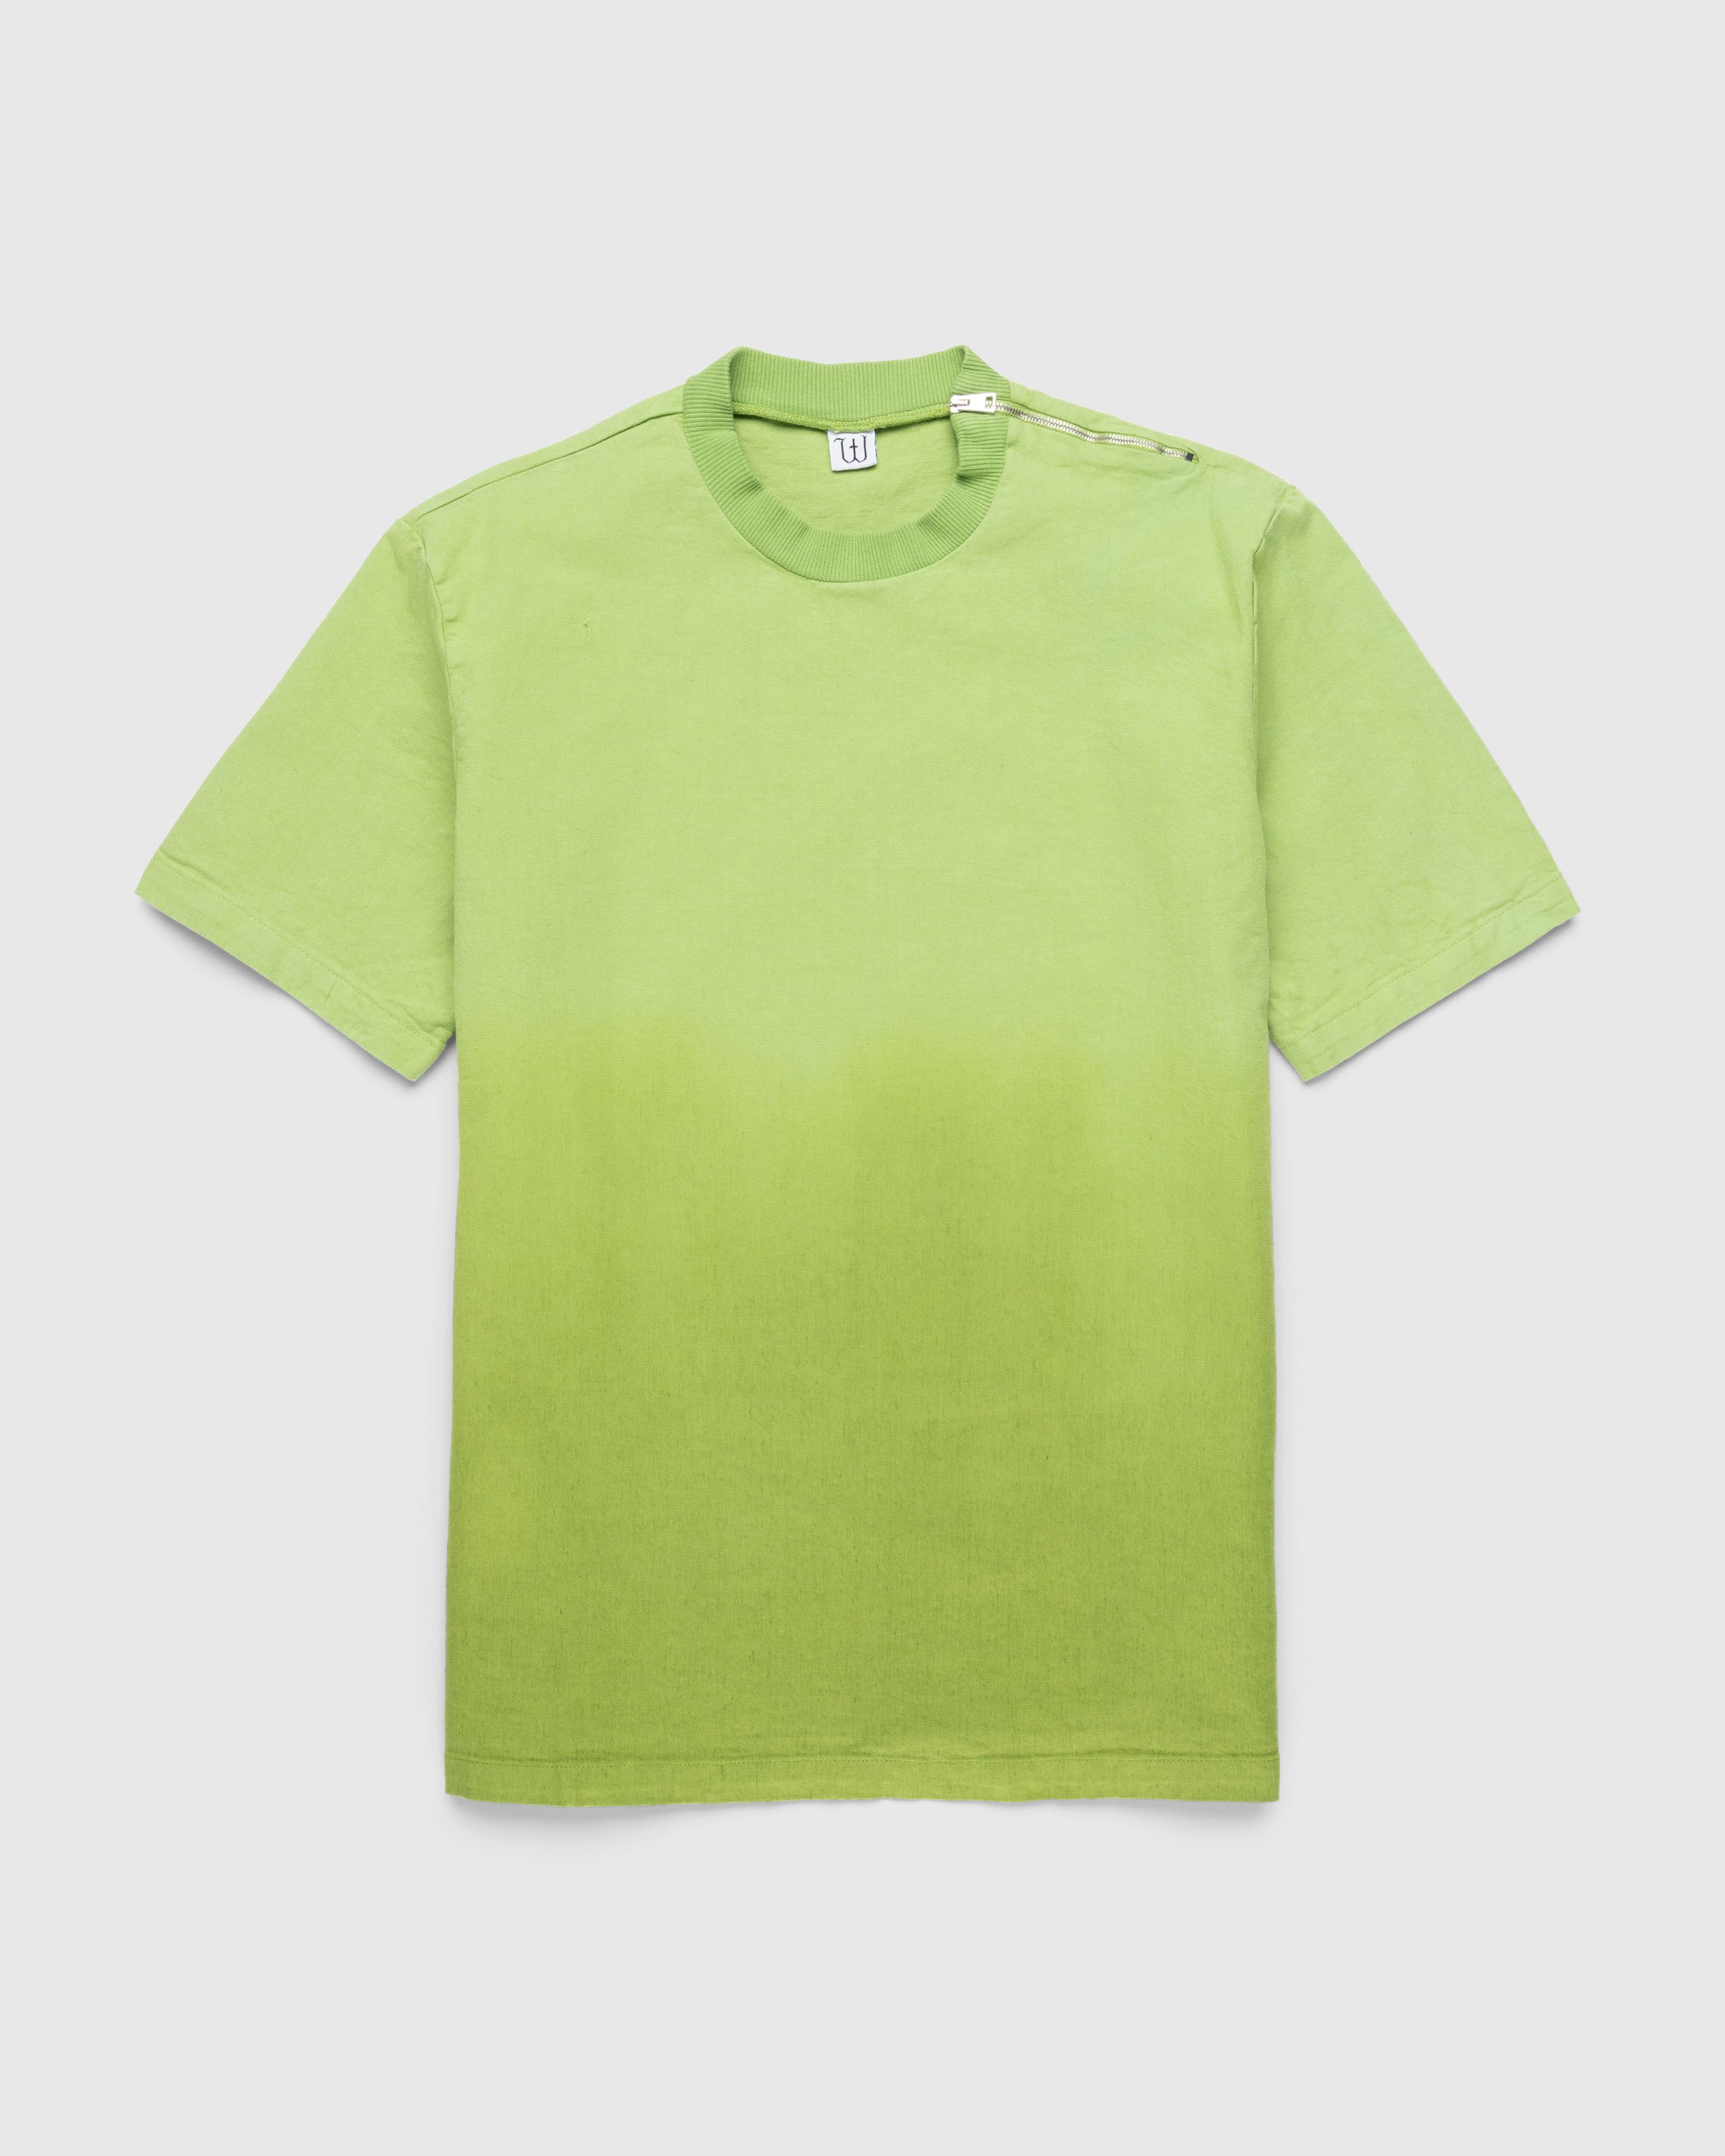 Winnie New York - Degrade Linen T-Shirt Green - Clothing - Green - Image 1